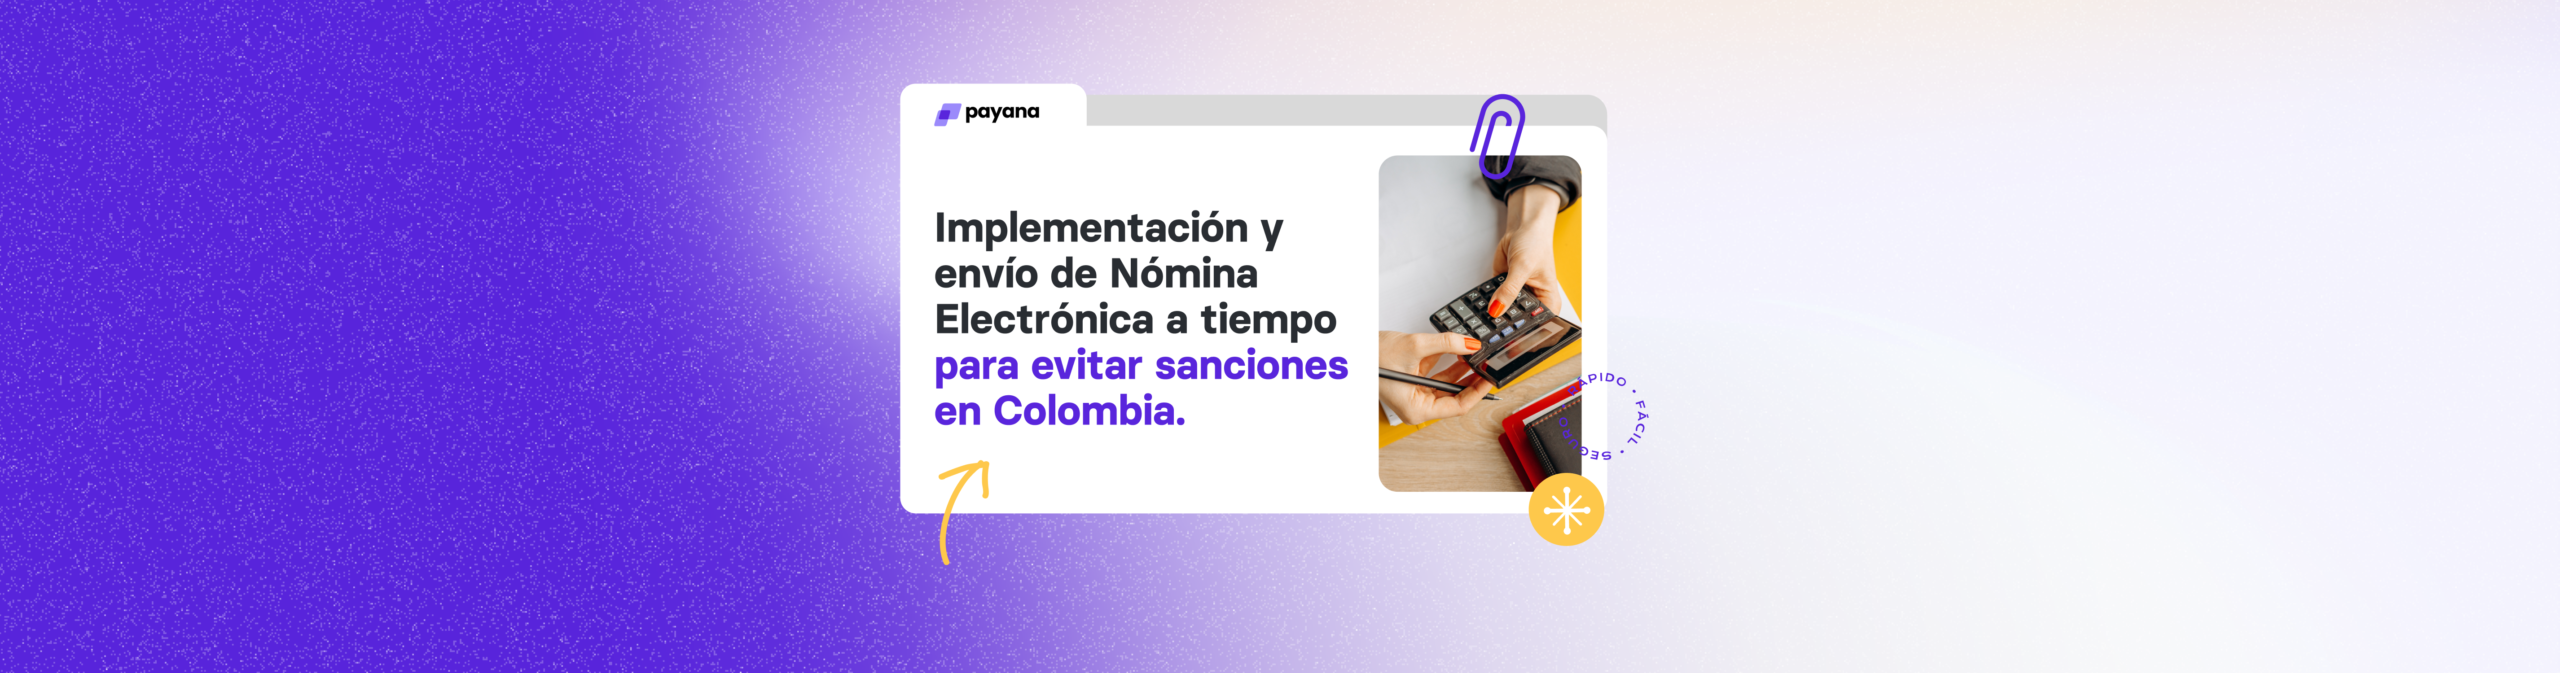 Implementación y envío de Nómina Electrónica a tiempo para evitar sanciones en Colombia.